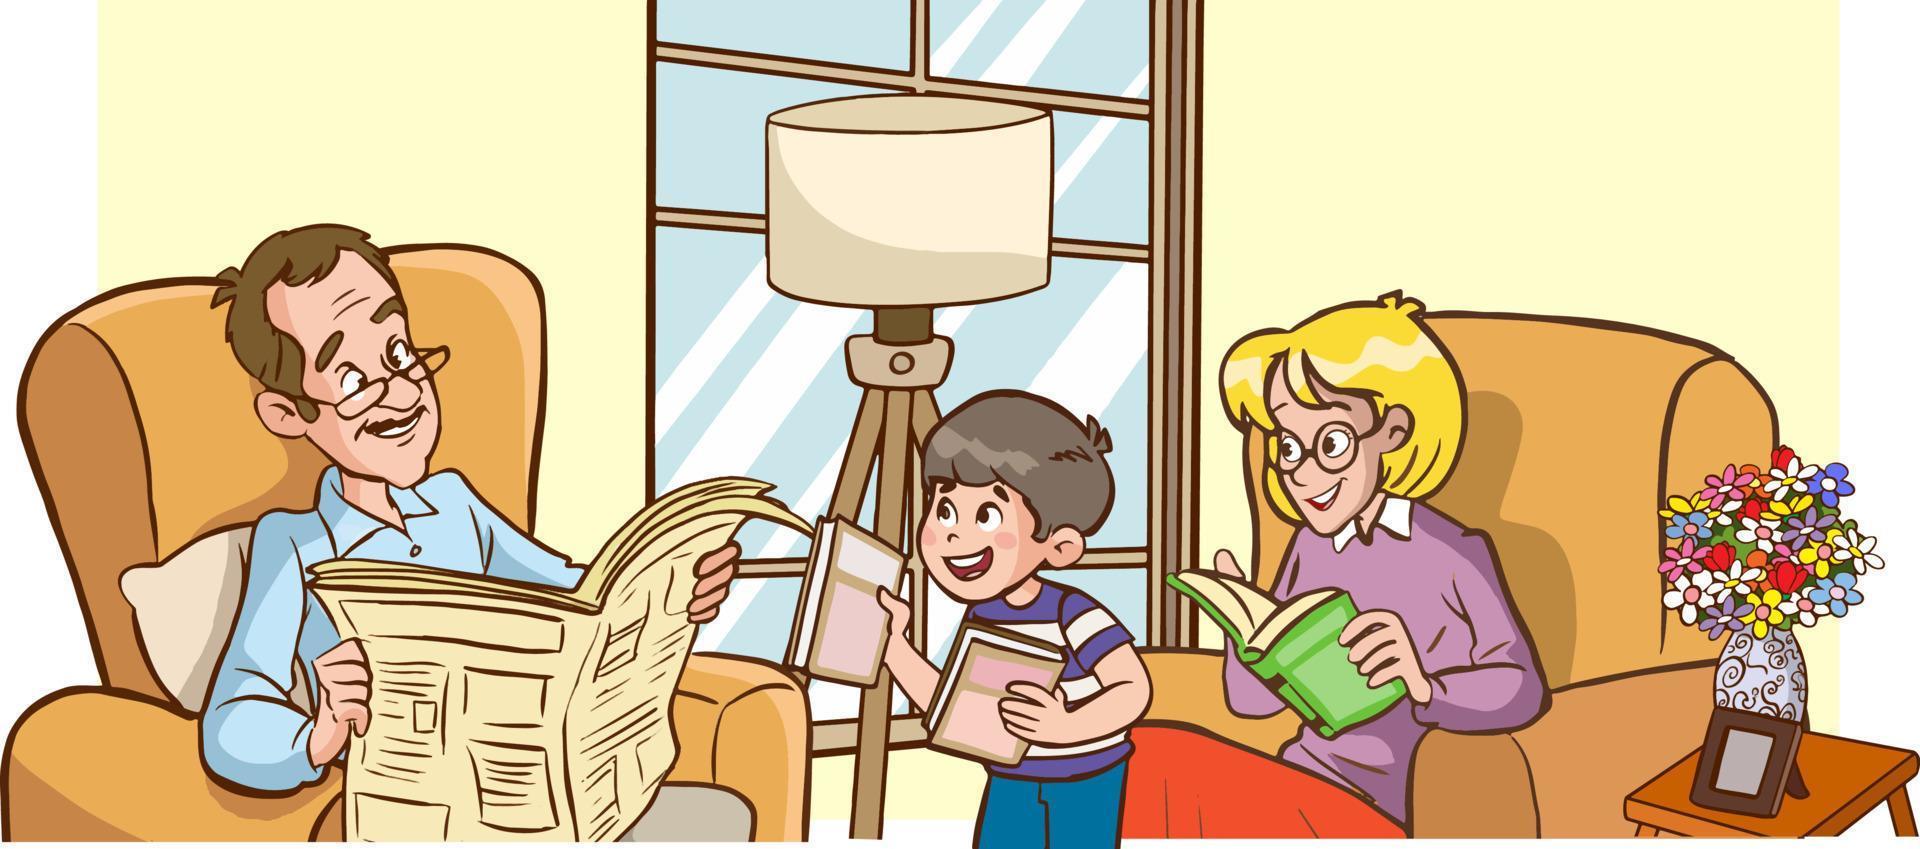 famiglia disegno.donna lettura libro e bambini studiando cartone animato vettore